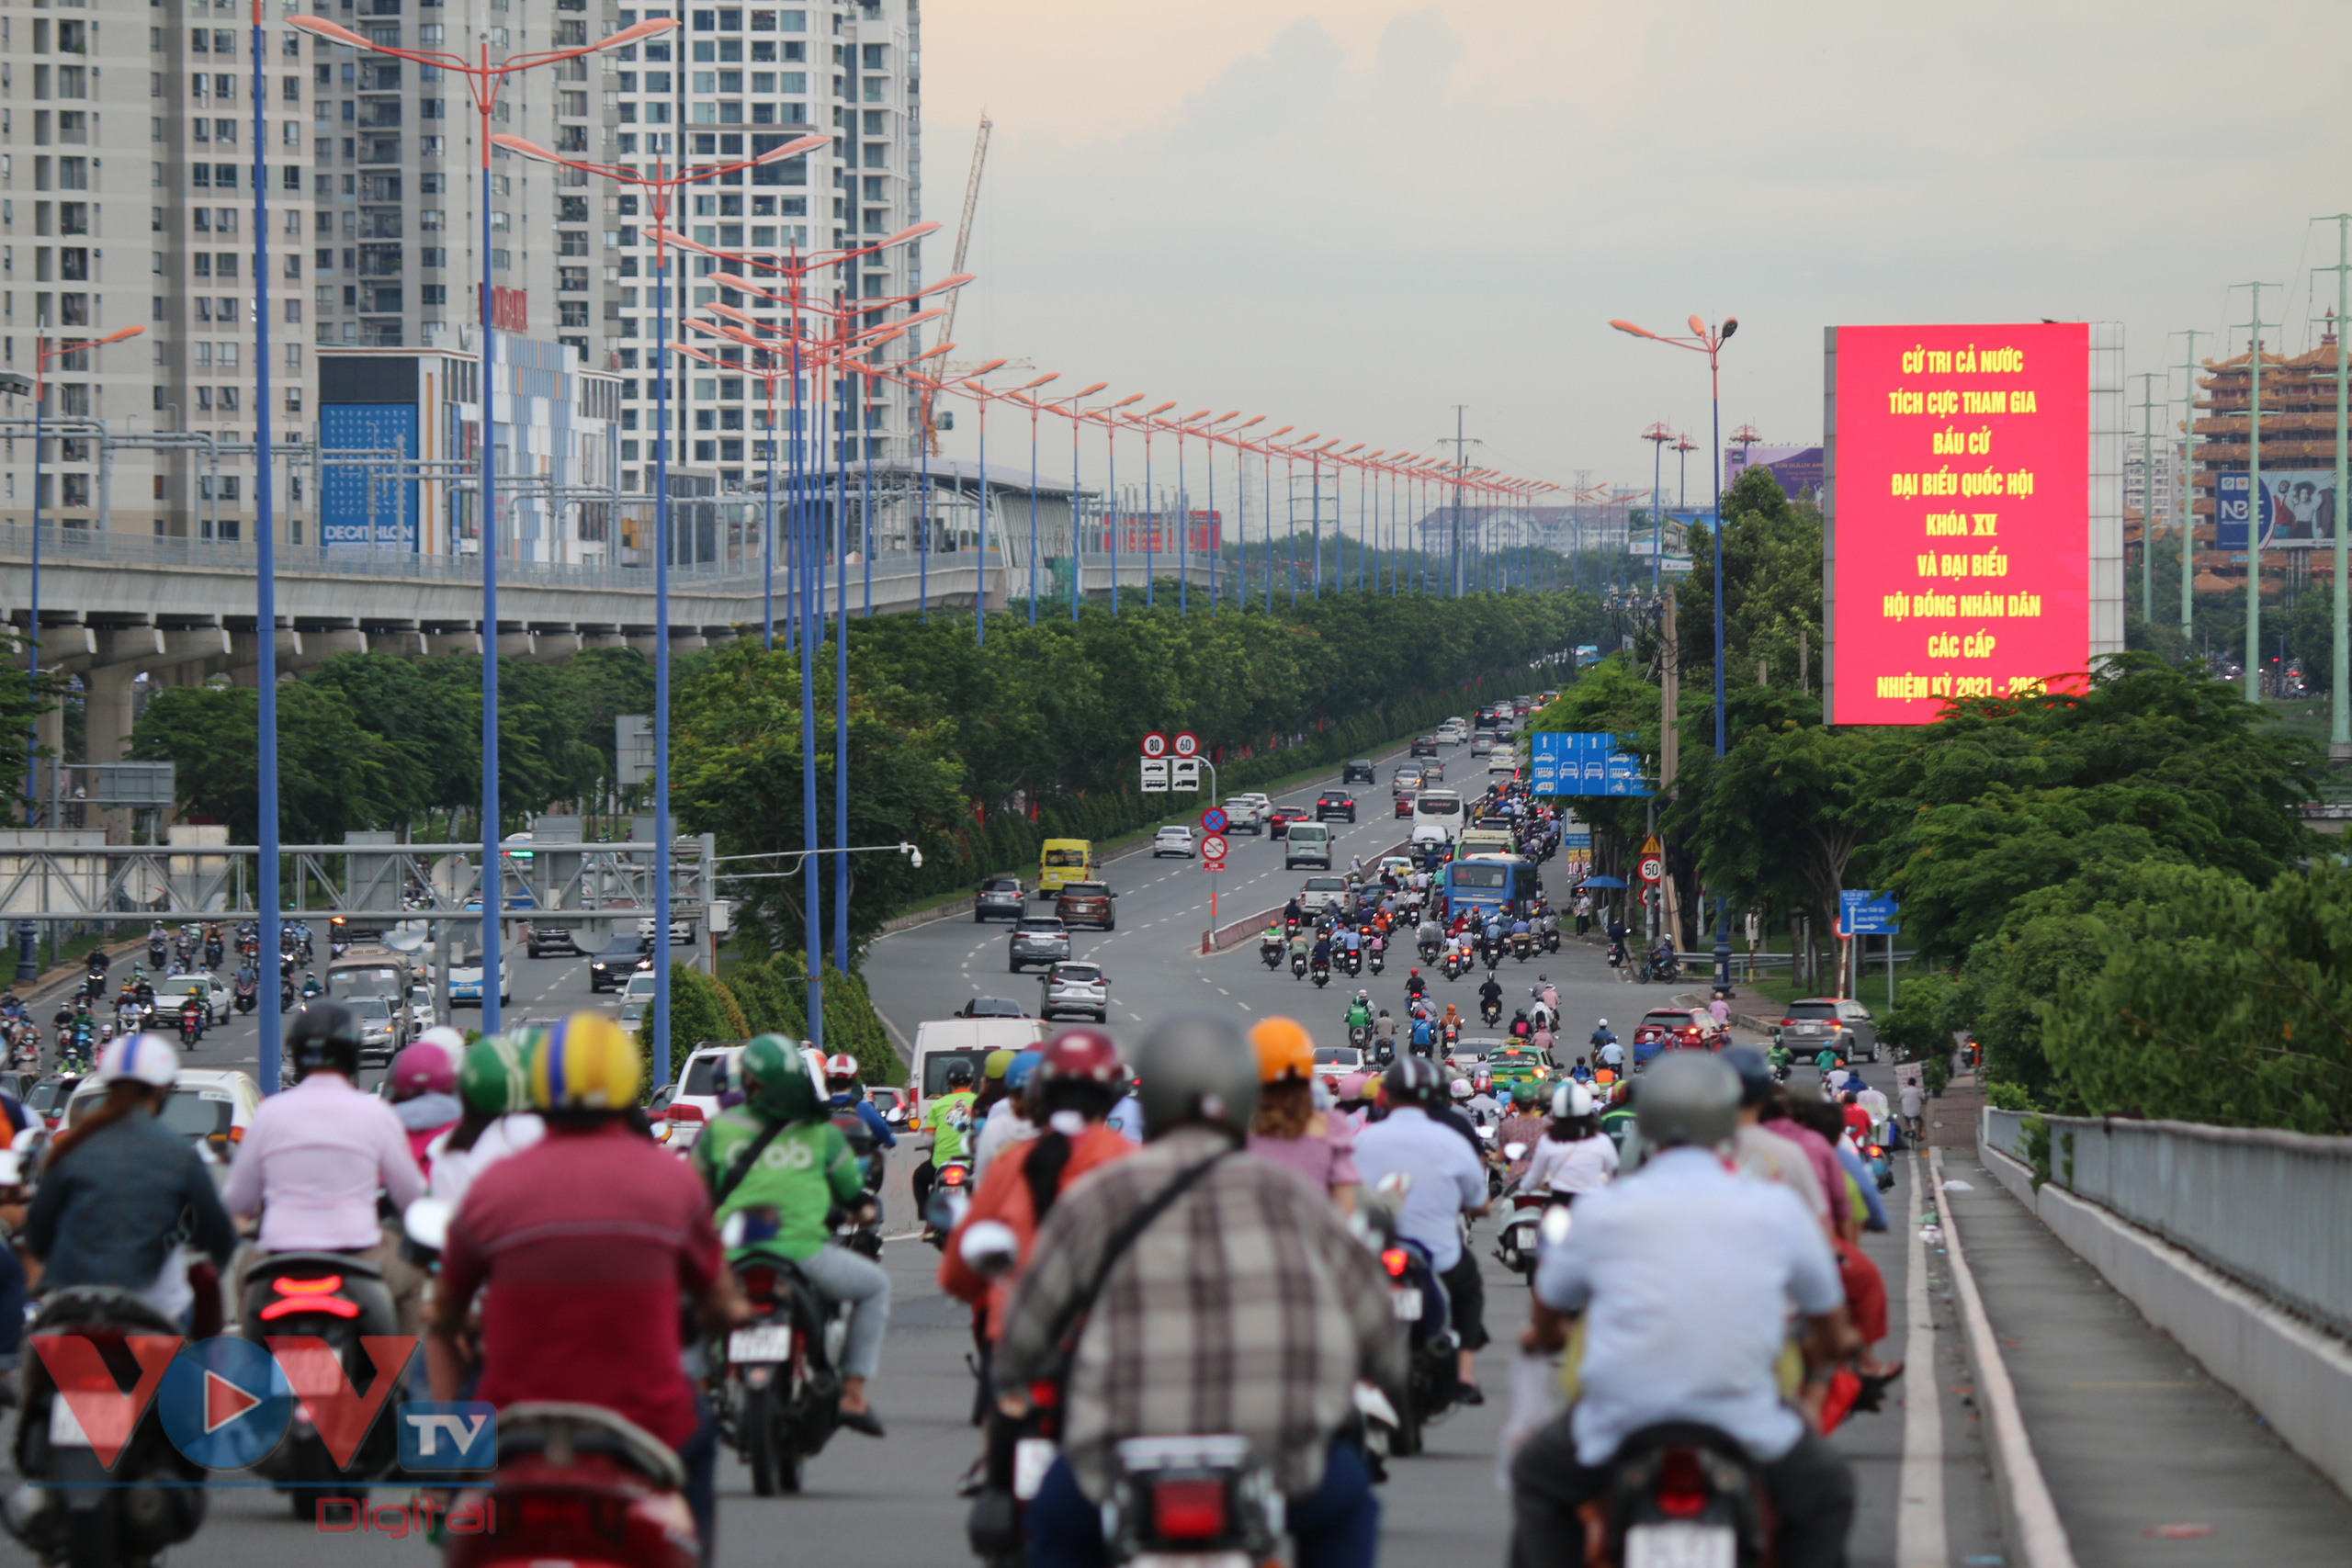 Màn hình led trên xa lộ Hà Nội, dưới chân cầu Sài Gòn luôn hiển thị những nội dung tuyên truyền về  ngày bầu cử, thu hút sự quan tâm của người đi đường